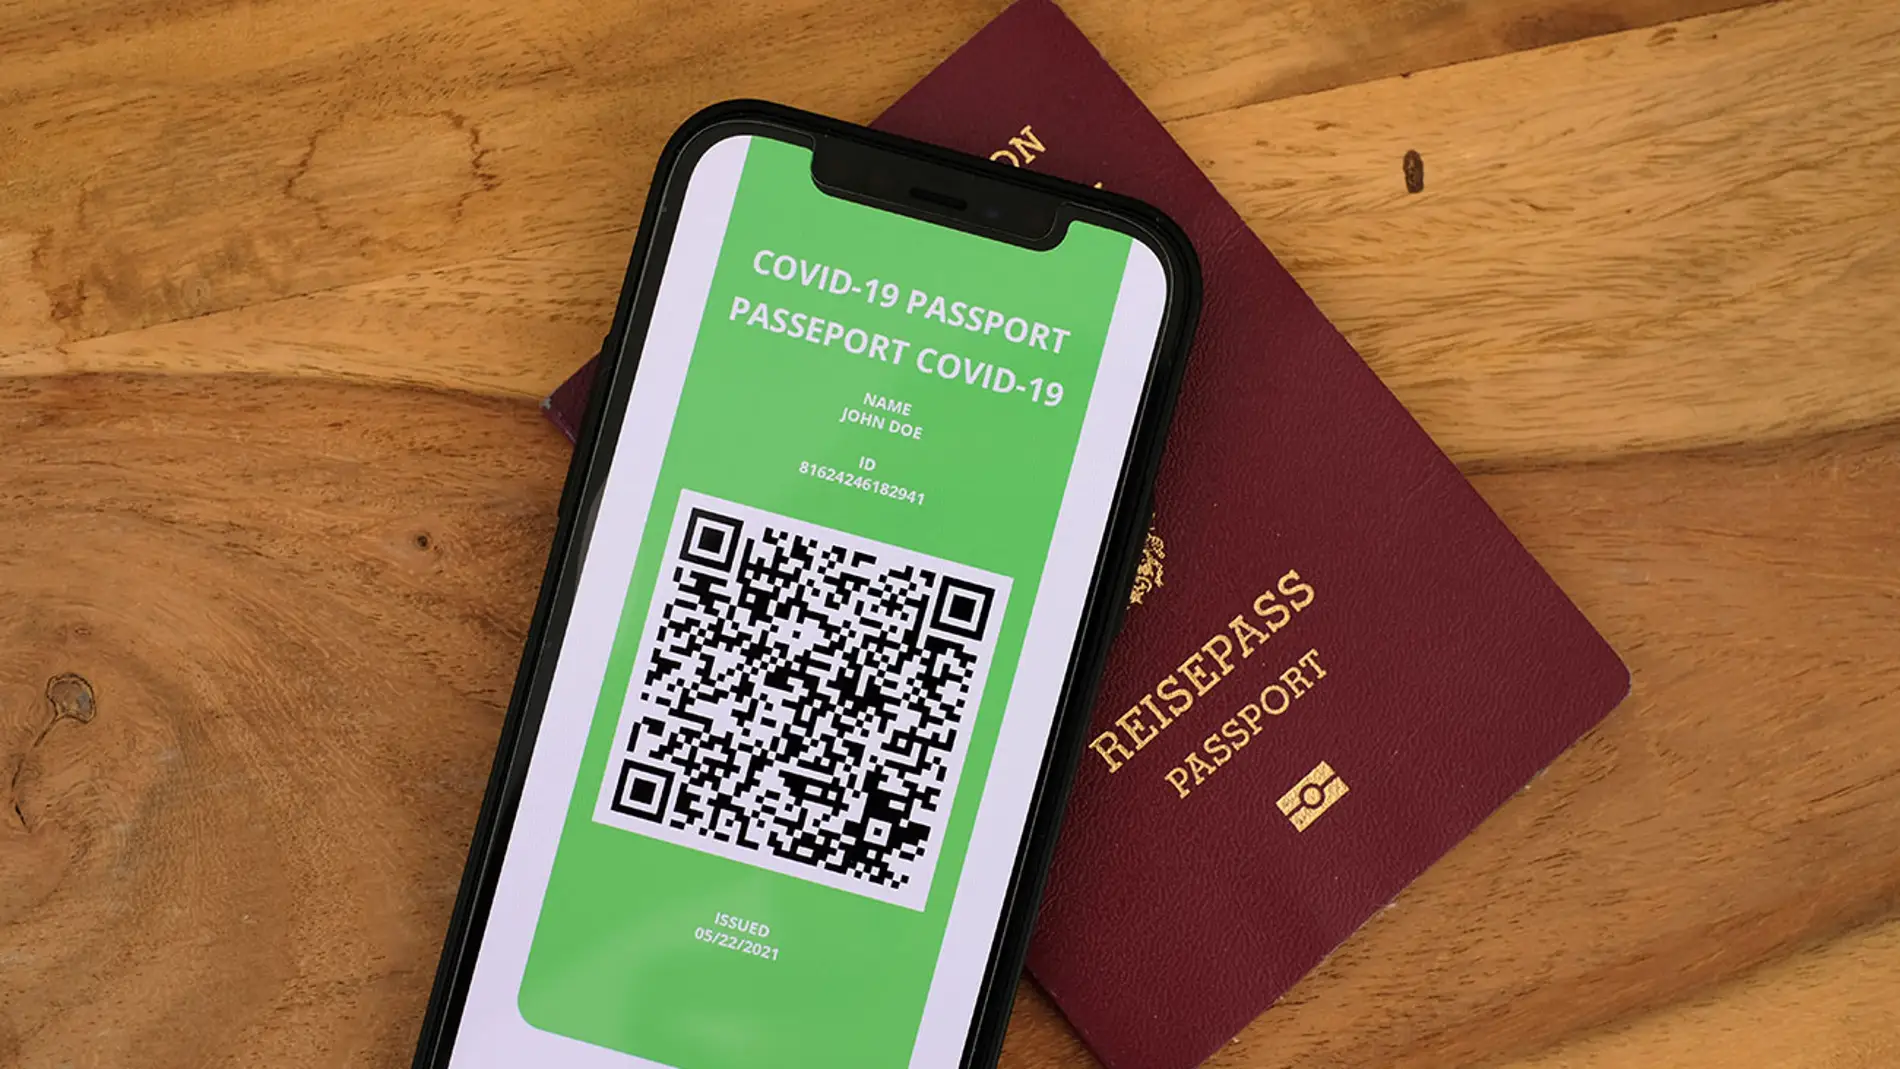 Lleva siempre encima el pasaporte COVID, conviértelo en un widget para tu móvil